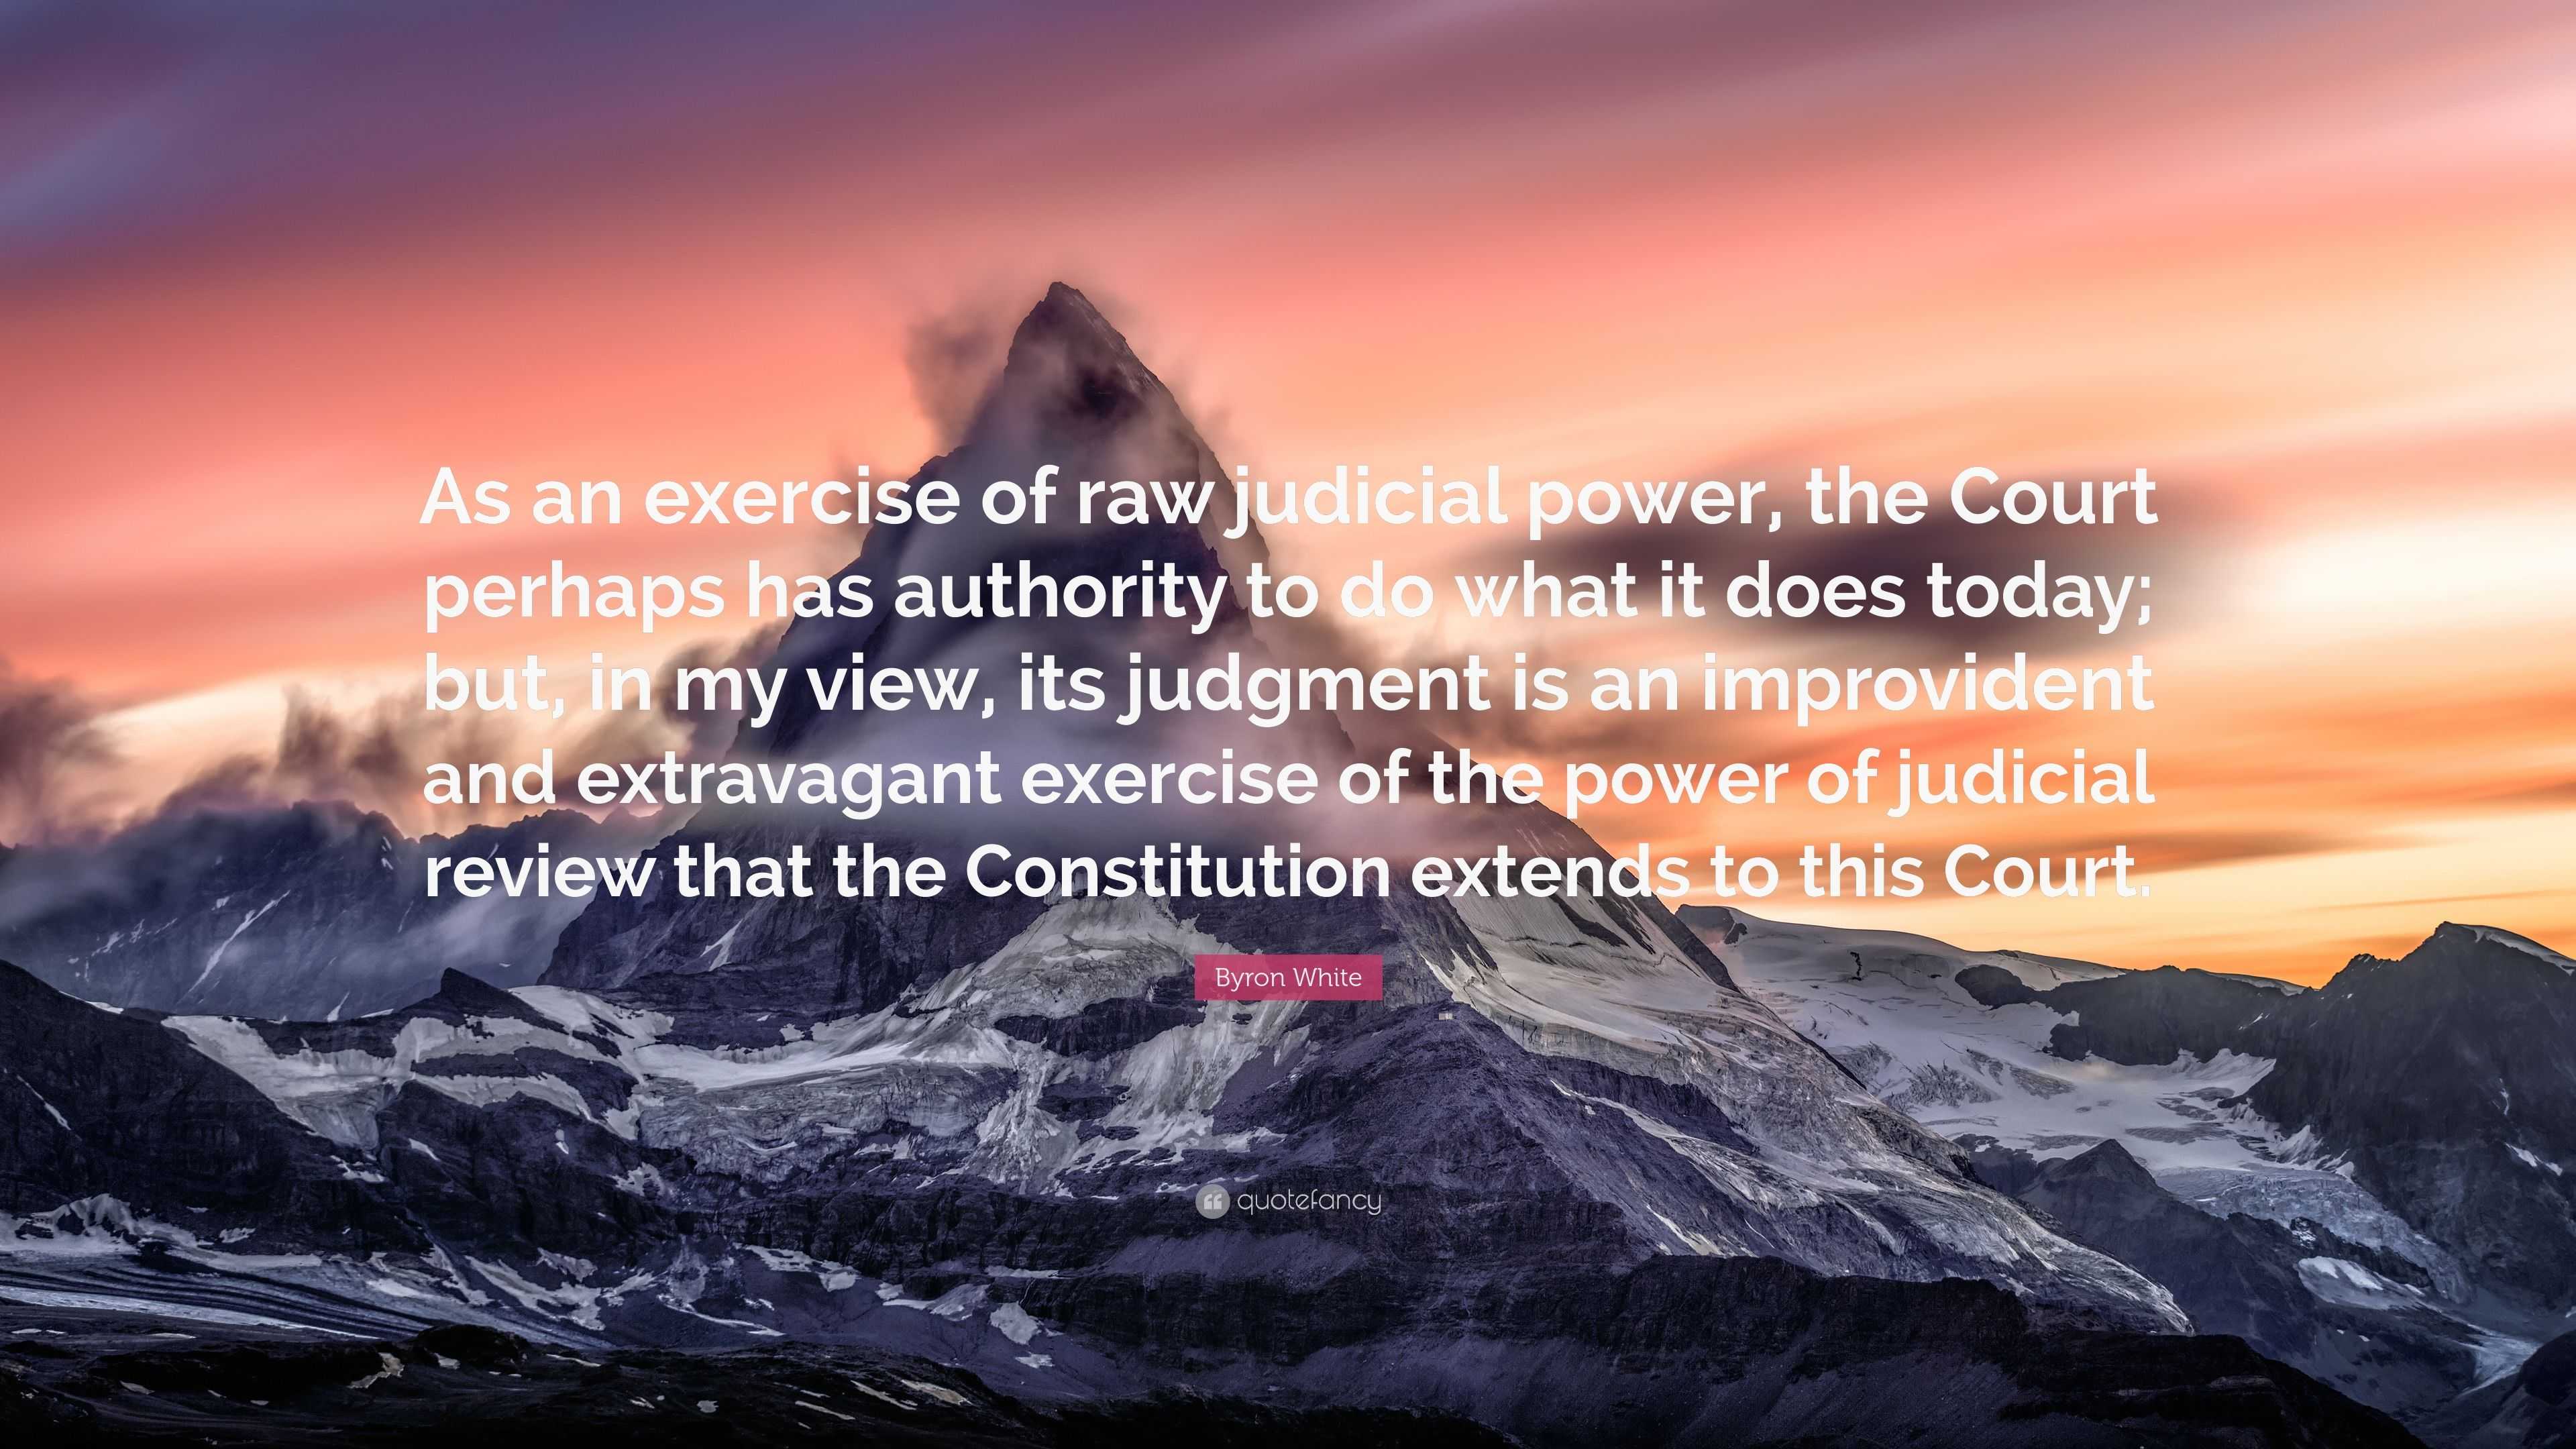 judicial power